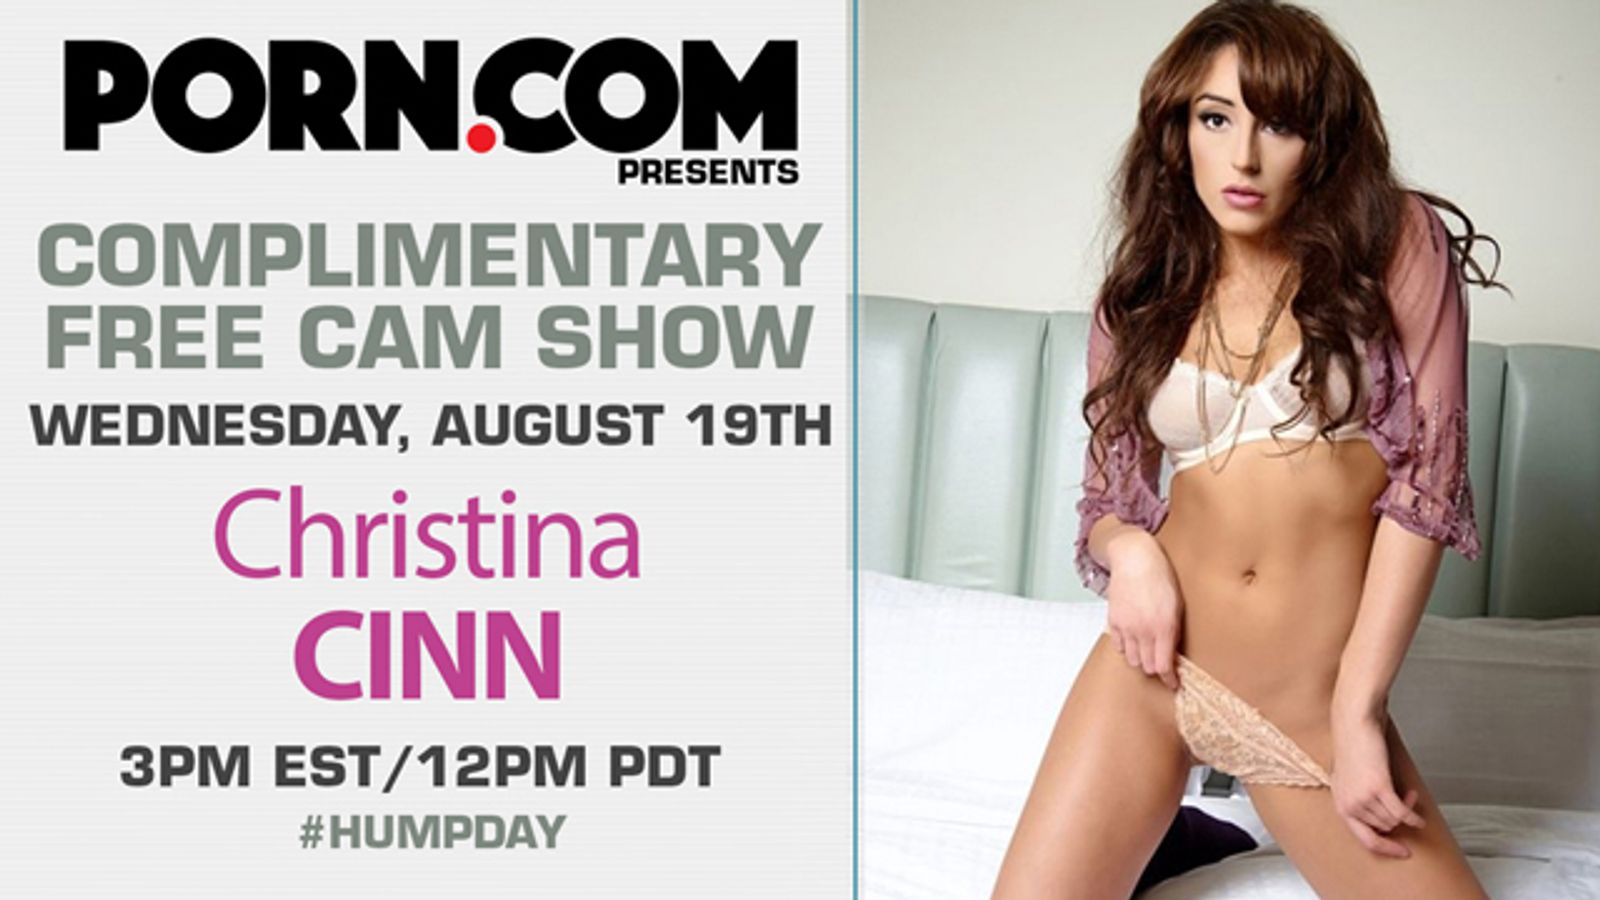 Christiana Cinn Debuts Free Live Webcam Show on Porn.com